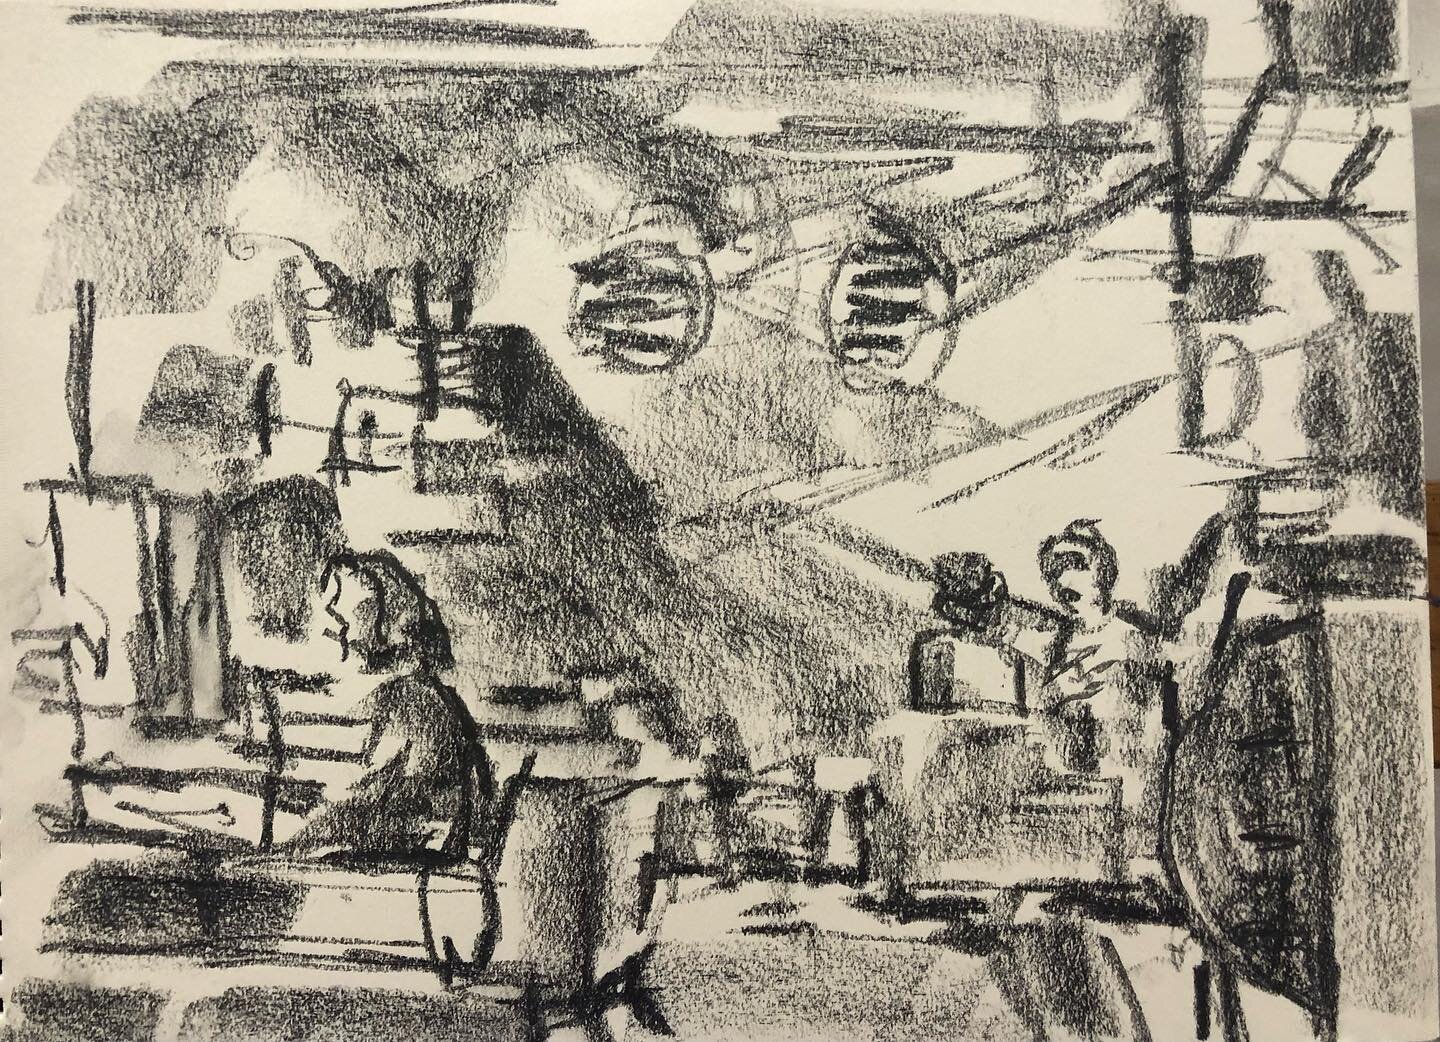 Black Hole coffee shop drawings. Noir series. #blackholecoffee #blackholecoffeehouston #houstonart #museumdistrict